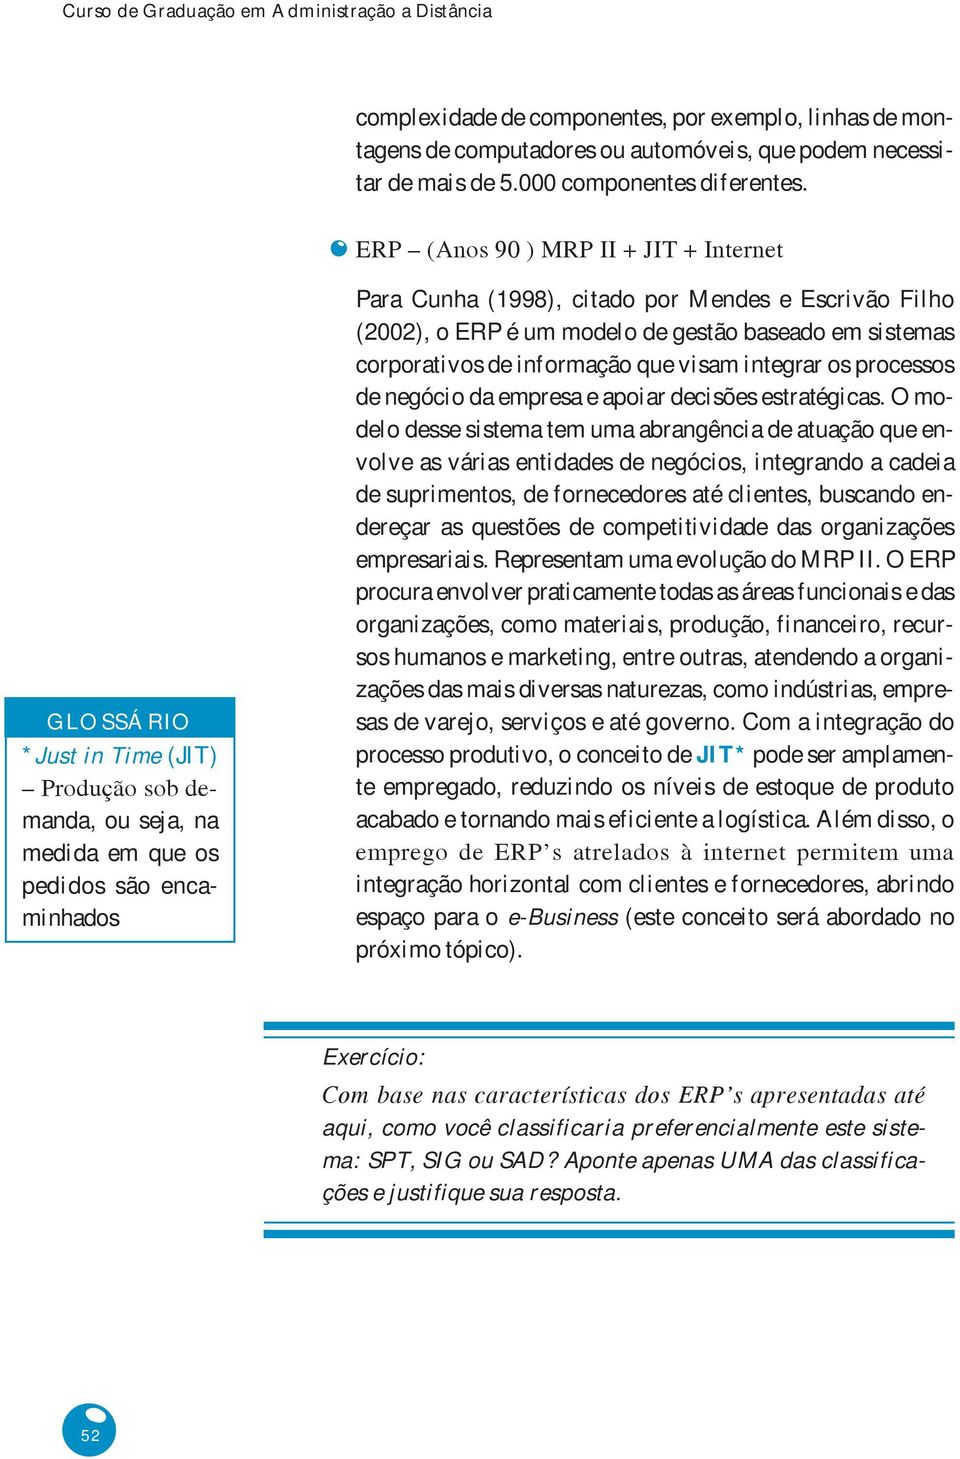 ERP (Anos 90 ) MRP II + JIT + Internet GLOSSÁRIO *Just in Time (JIT) Produção sob demanda, ou seja, na medida em que os pedidos são encaminhados Para Cunha (1998), citado por Mendes e Escrivão Filho